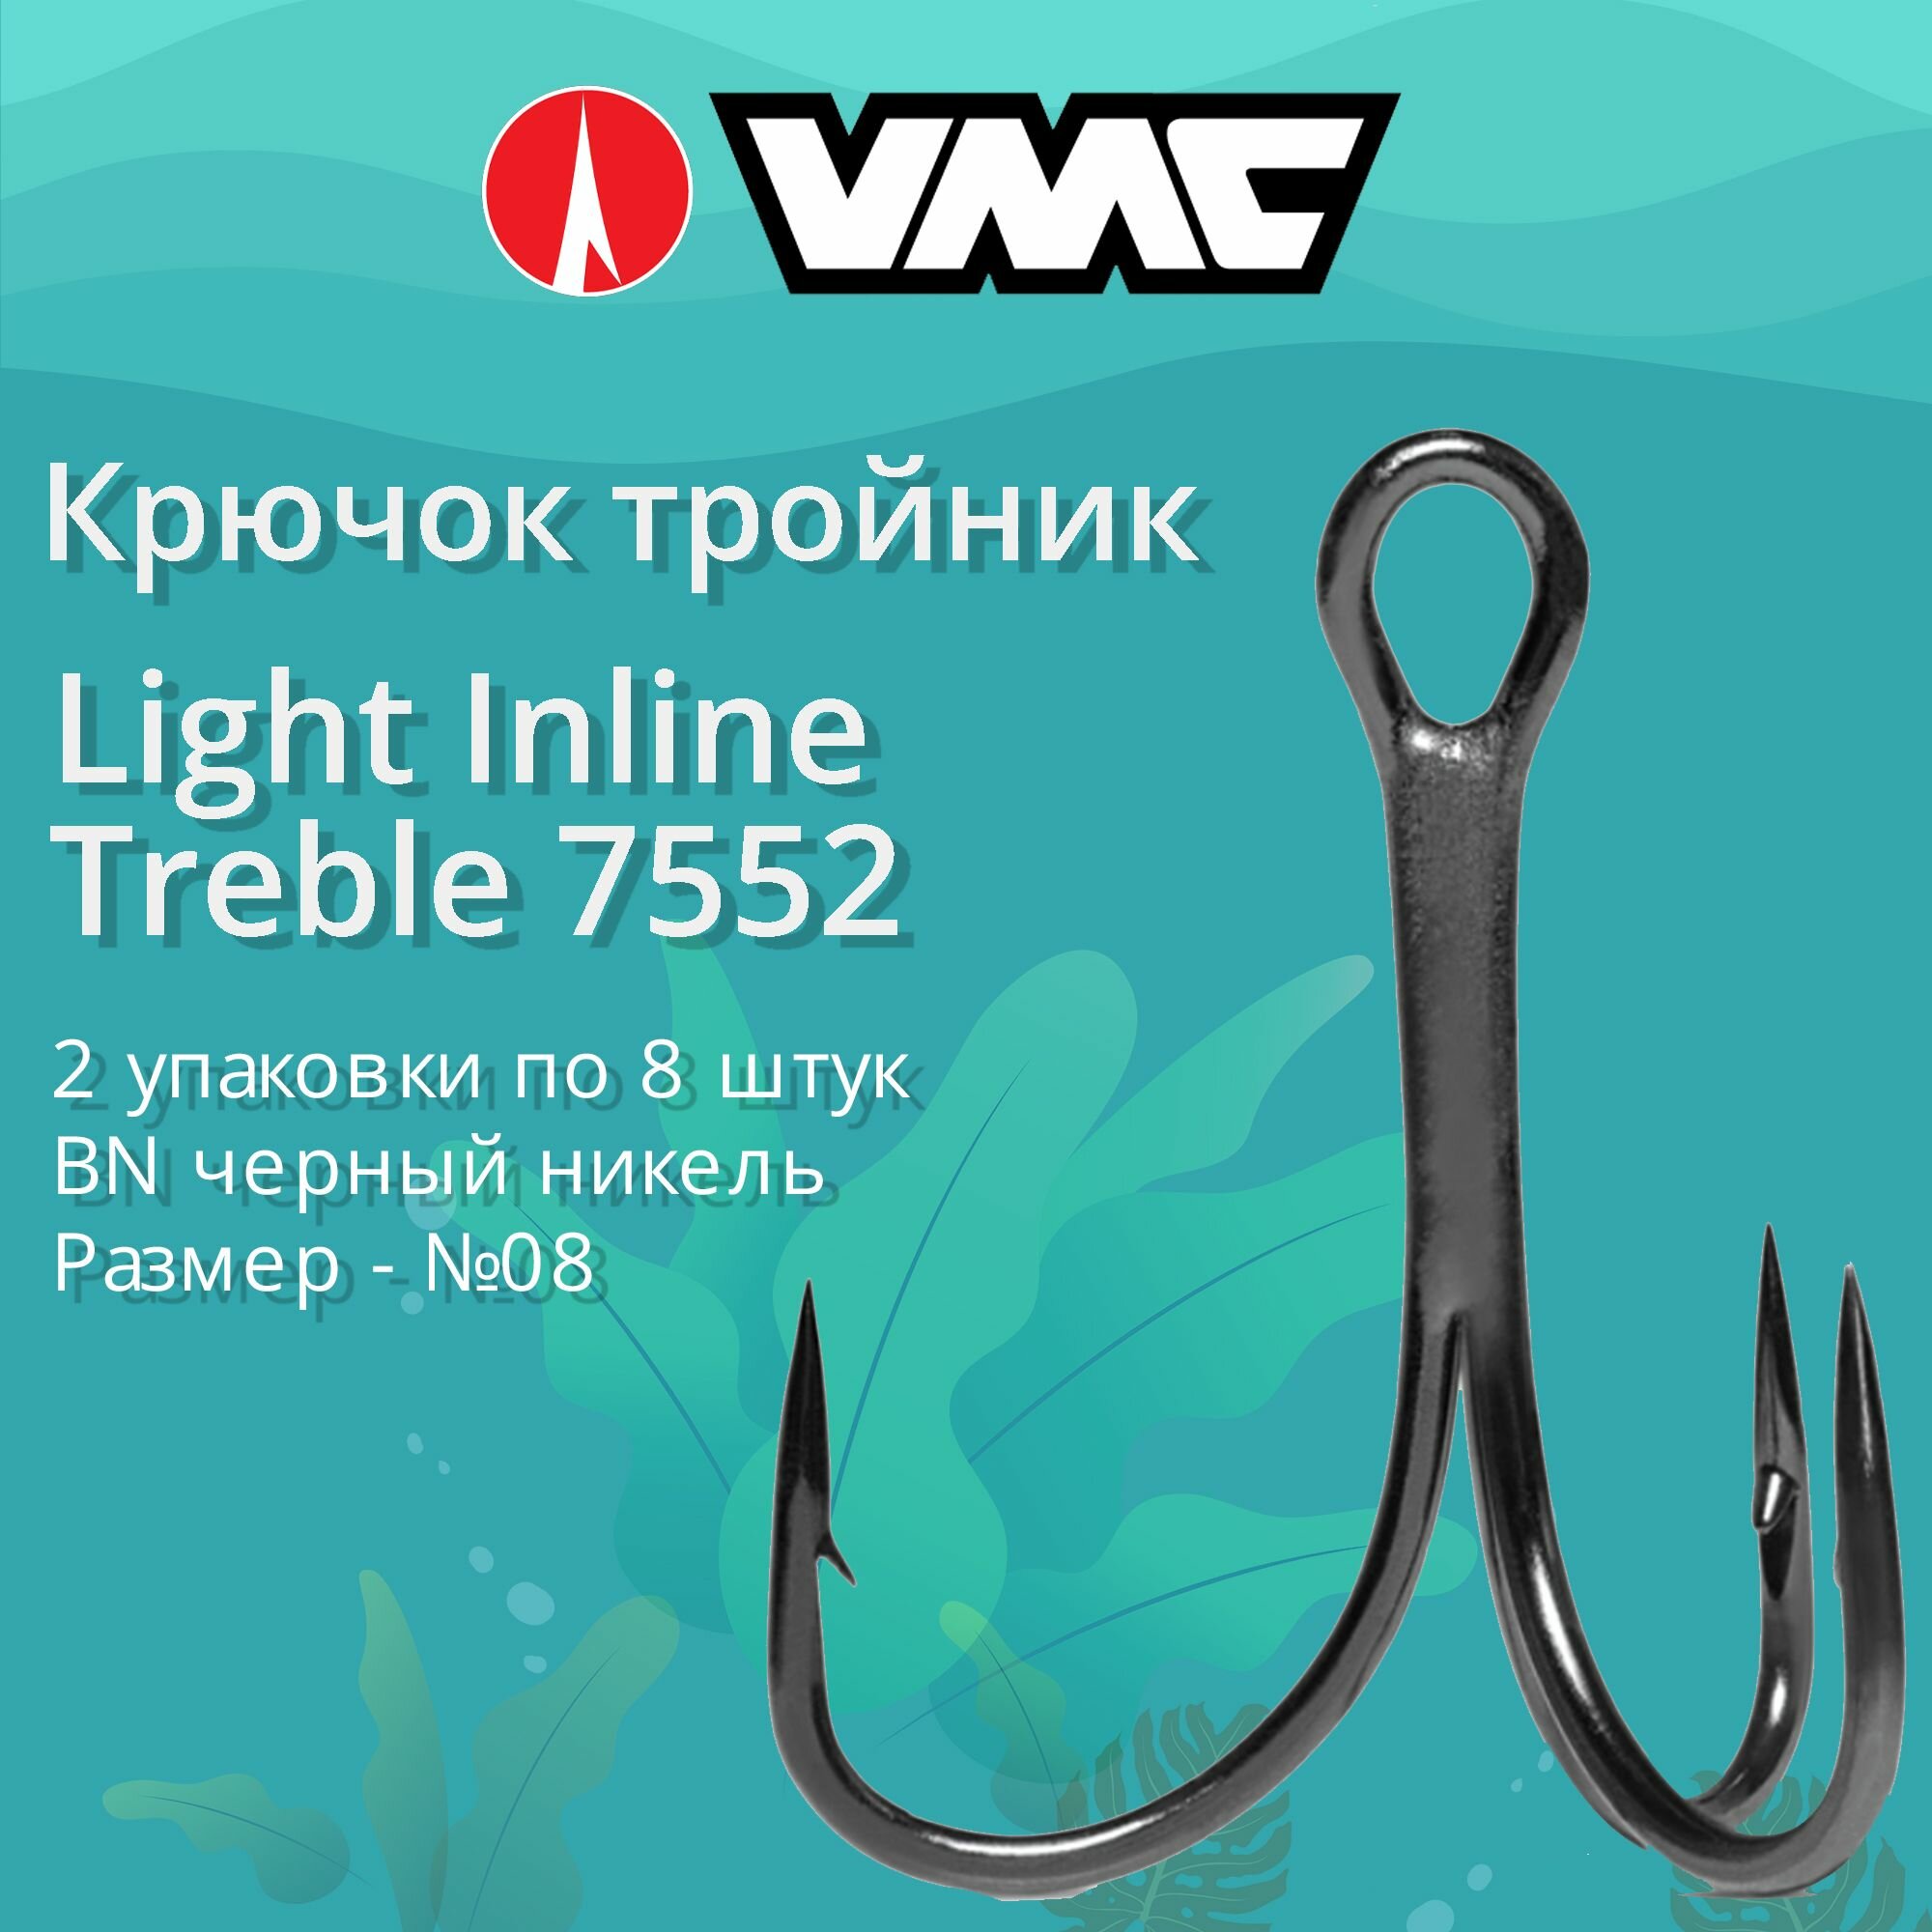 Крючки для рыбалки (тройник) VMC Light Inline Treble 7552 BN (черн. никель) №08 (2 упаковки по 8 штук)